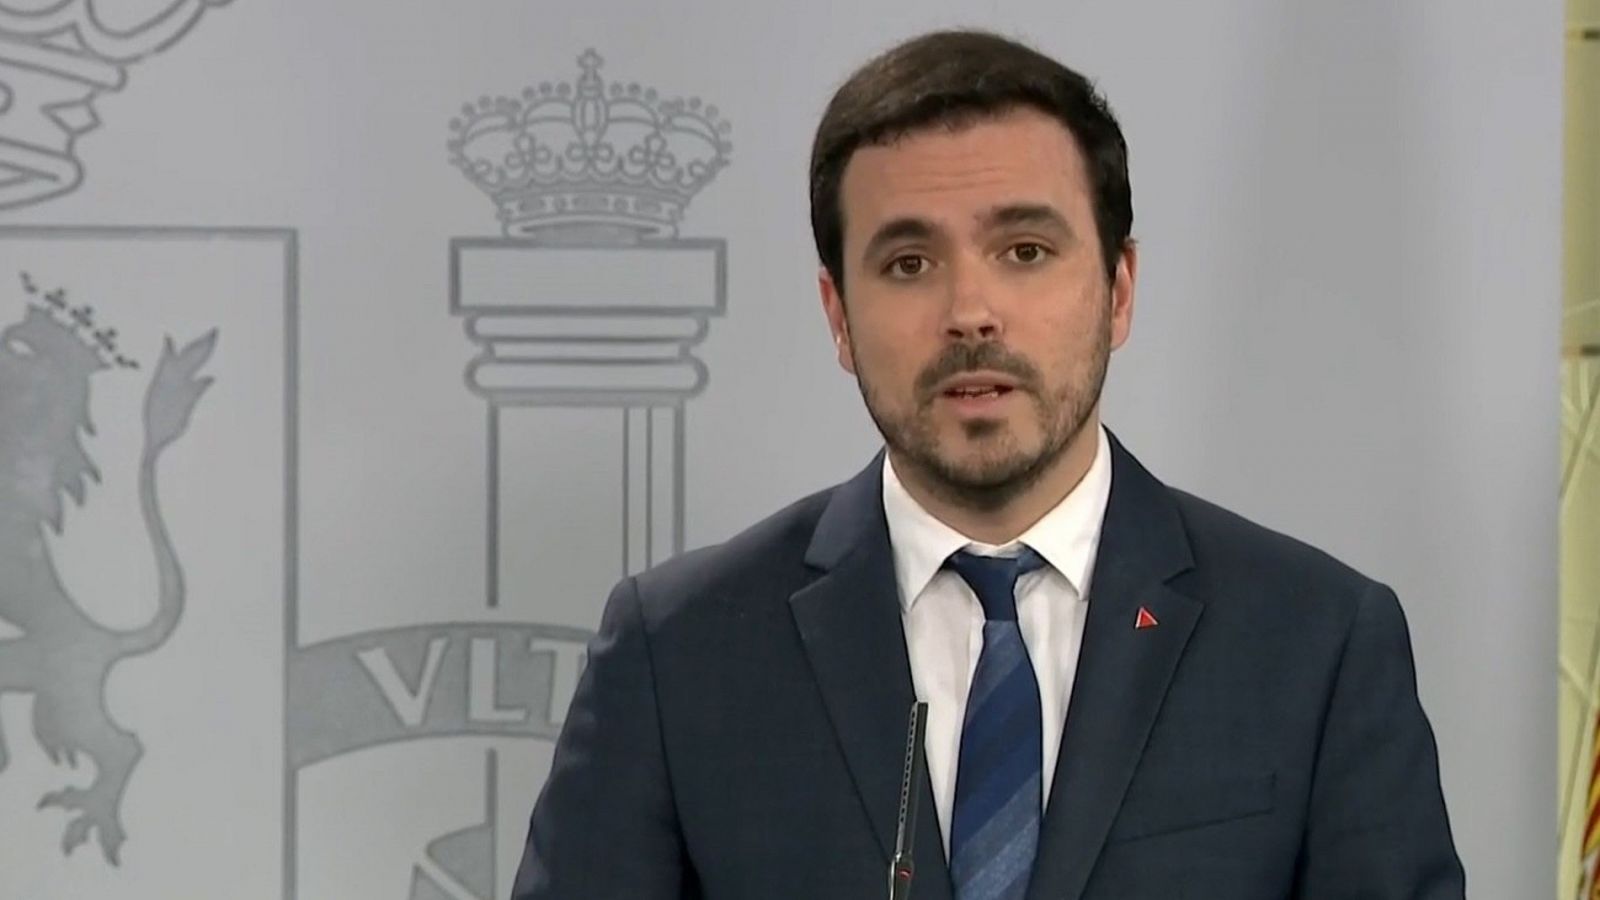 Coronavirus: Alberto Garzón: "Creo que después de esta crisis seremos capaces de volver a poner los cuidados en el centro de la vida" - RTVE.es